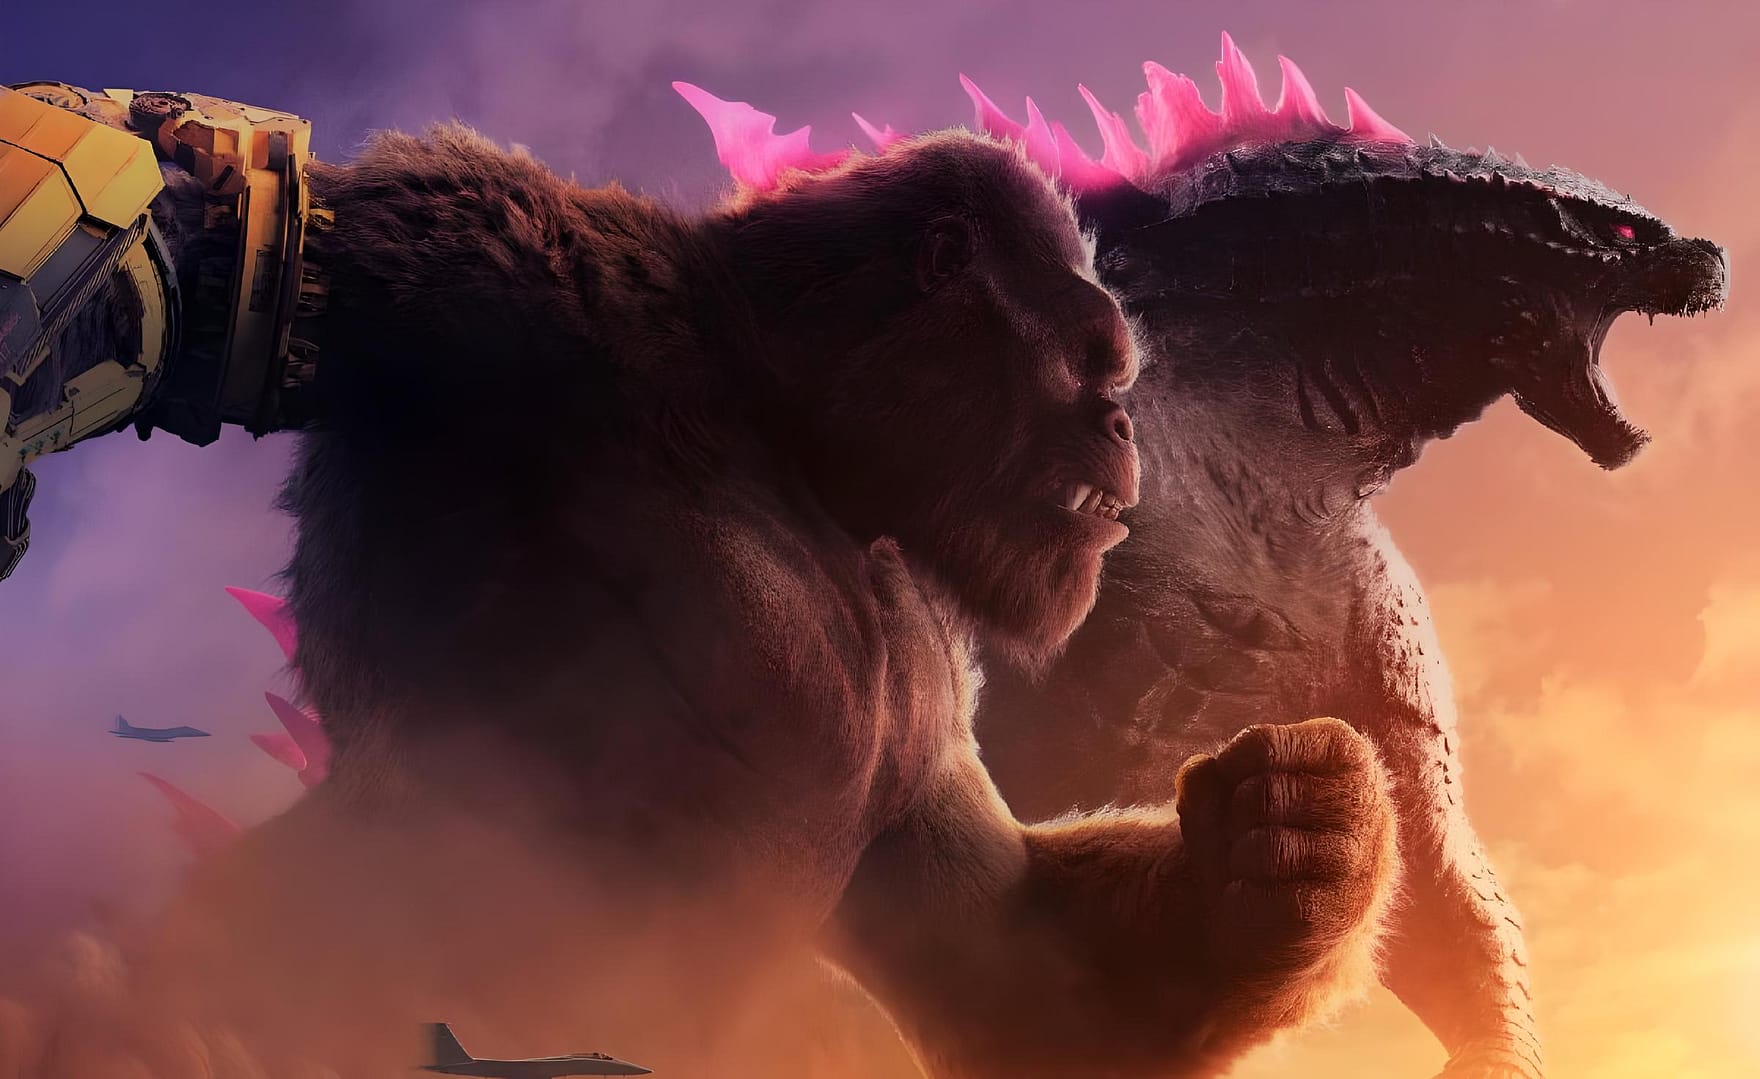 Godzilla x Kong the new empire